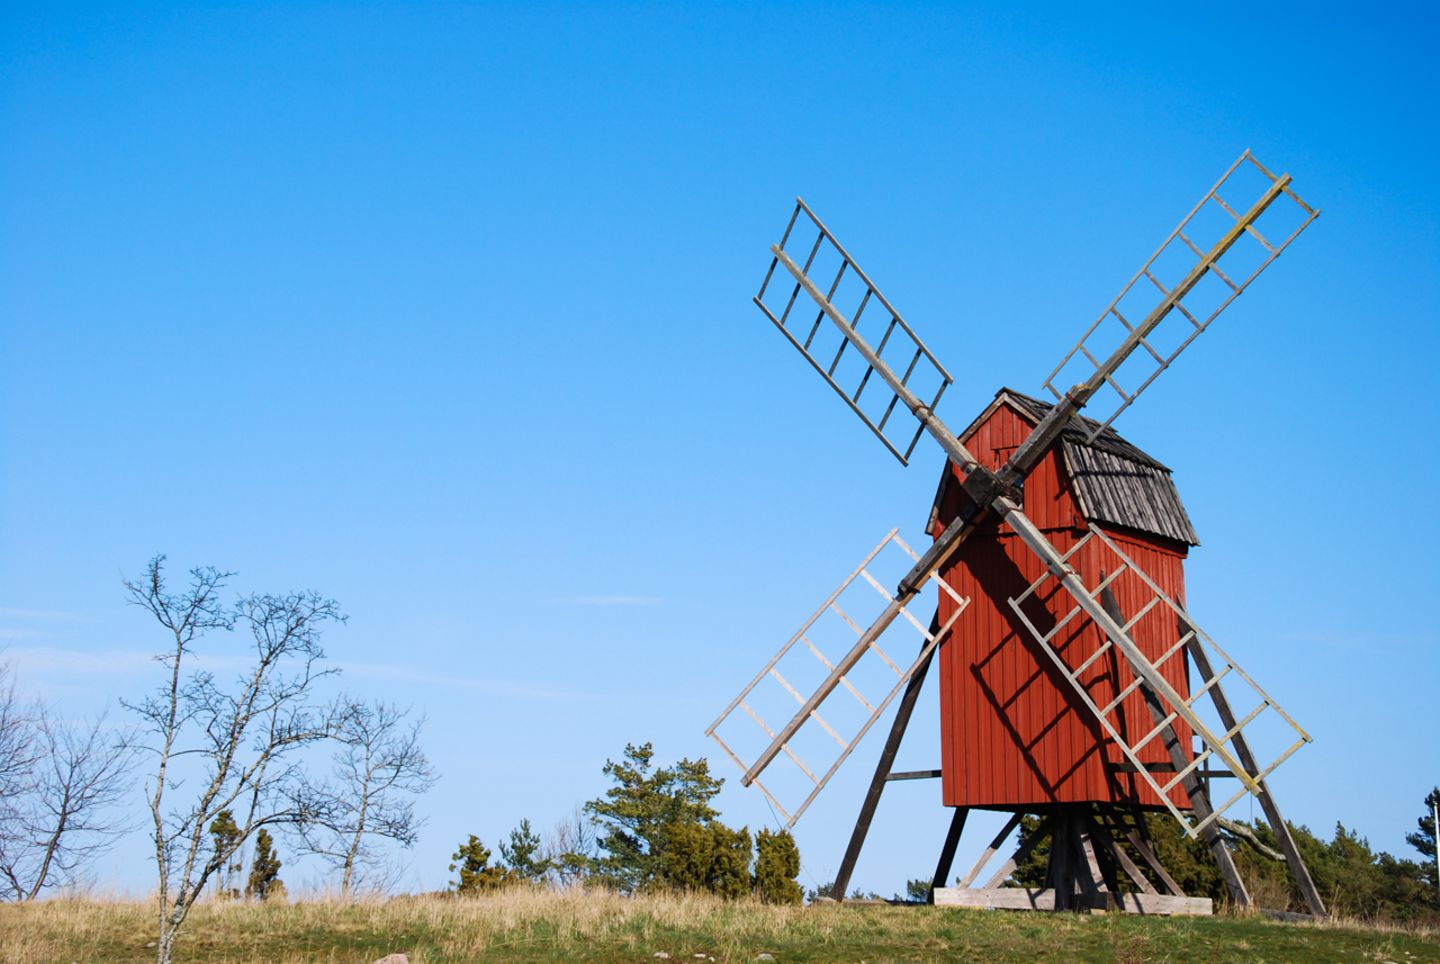 Redewendung: Eine Windmühle mahlt Getreide, damit Mehl entsteht